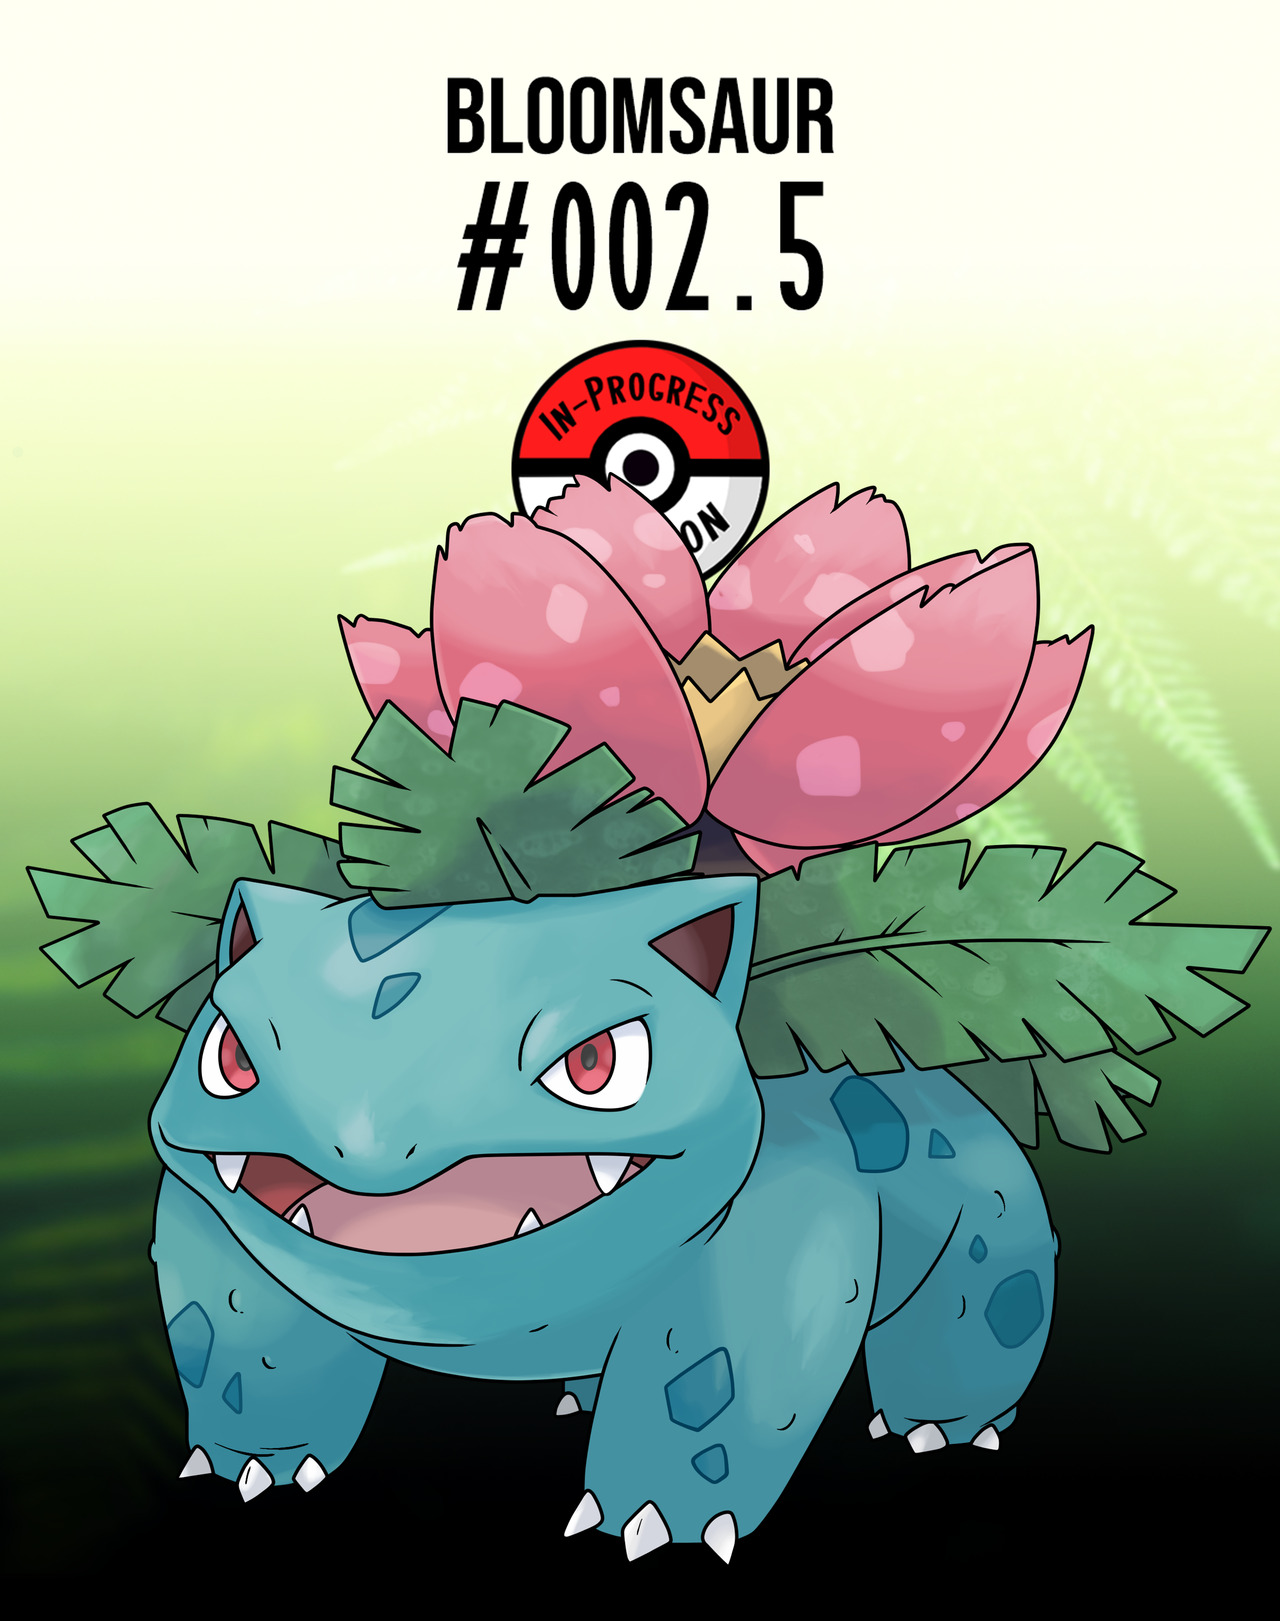 In-Progress Pokemon Evolutions — #172.5 - Despite their small size, Pichu  are